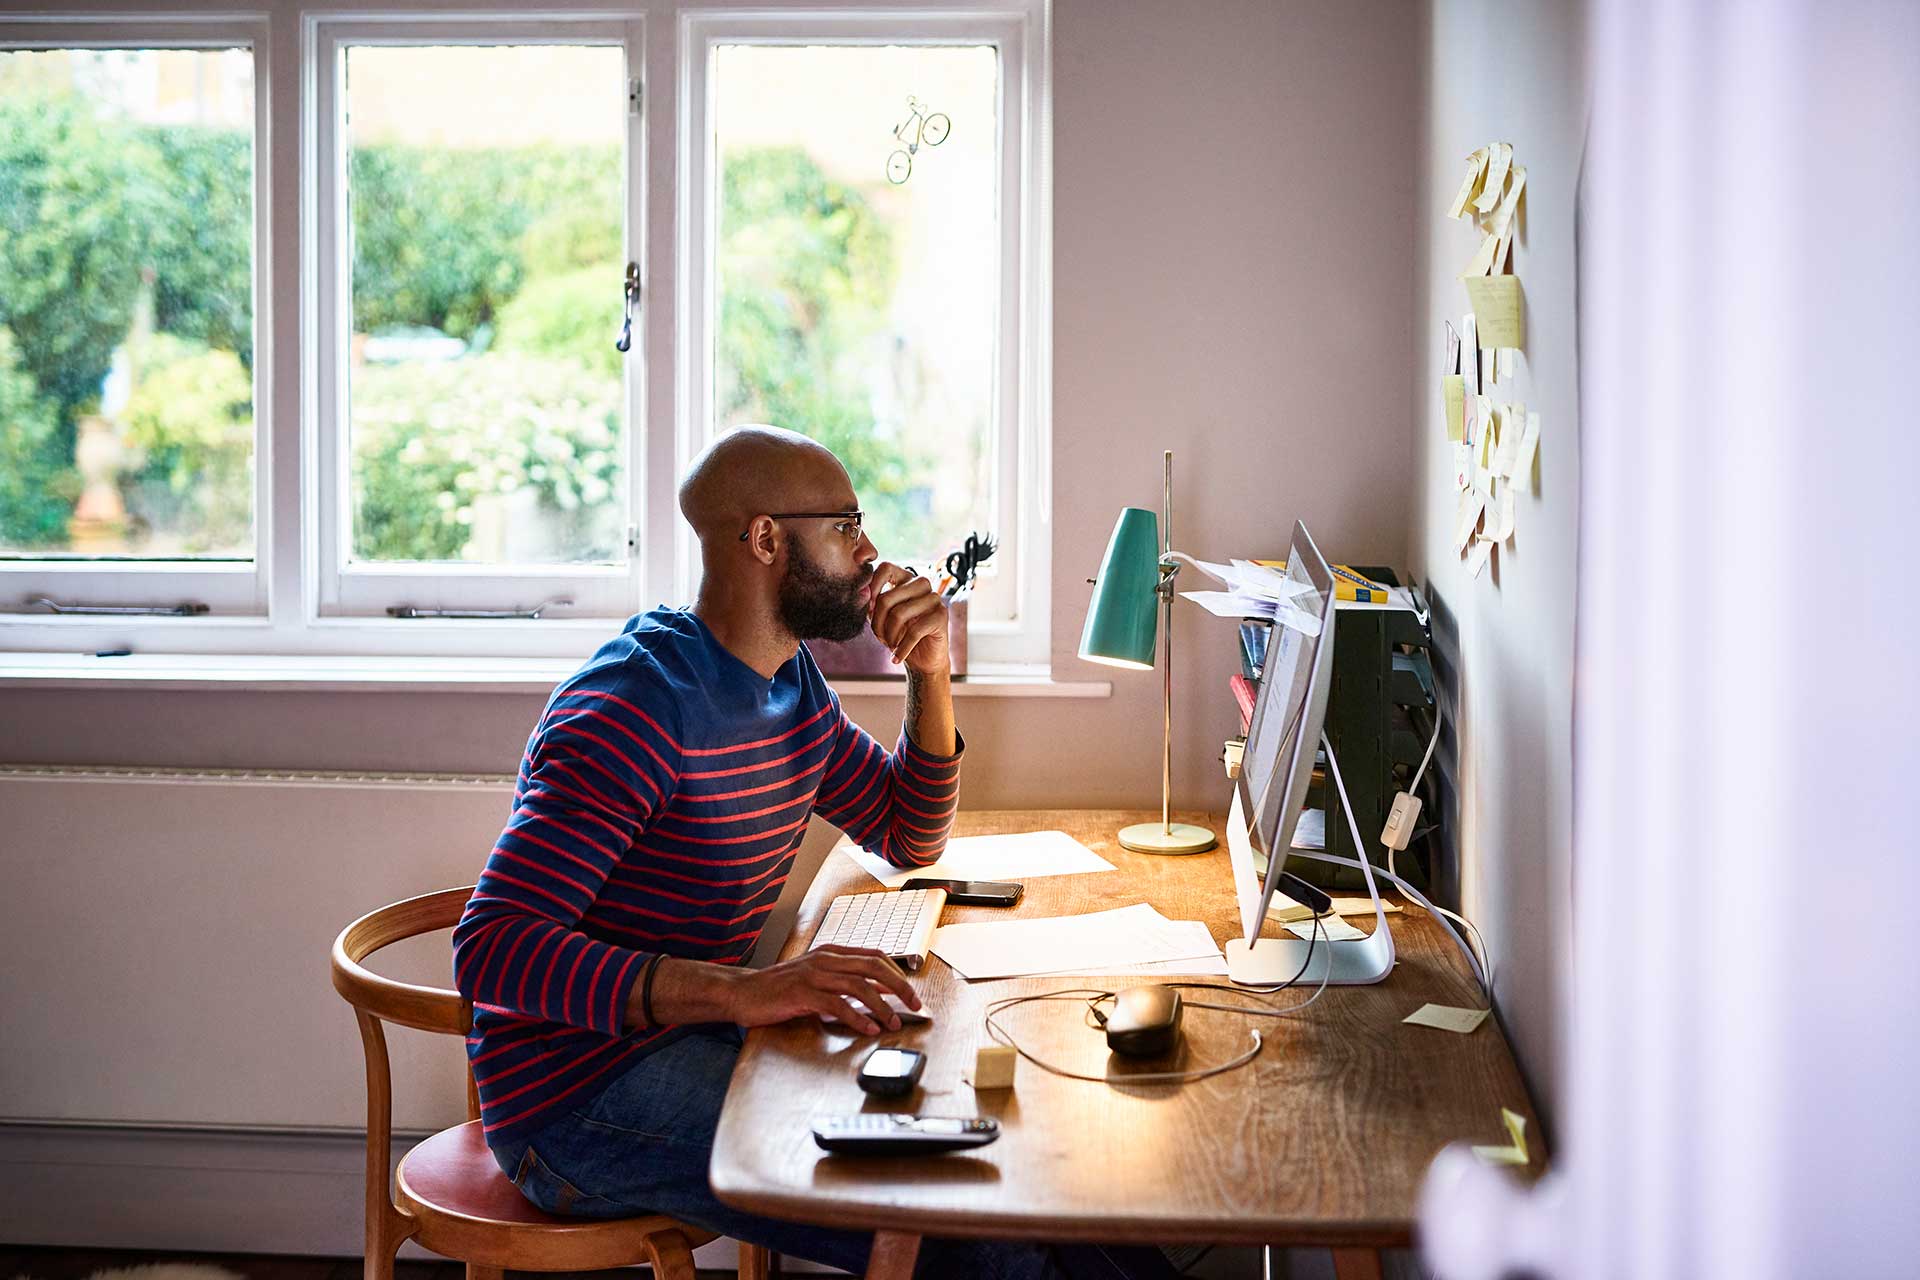 Pessoa sentada em uma mesa, com a mão no mouse olhando para a tela do computador enquanto tenta descobrir porque não consegue editar um PDF.